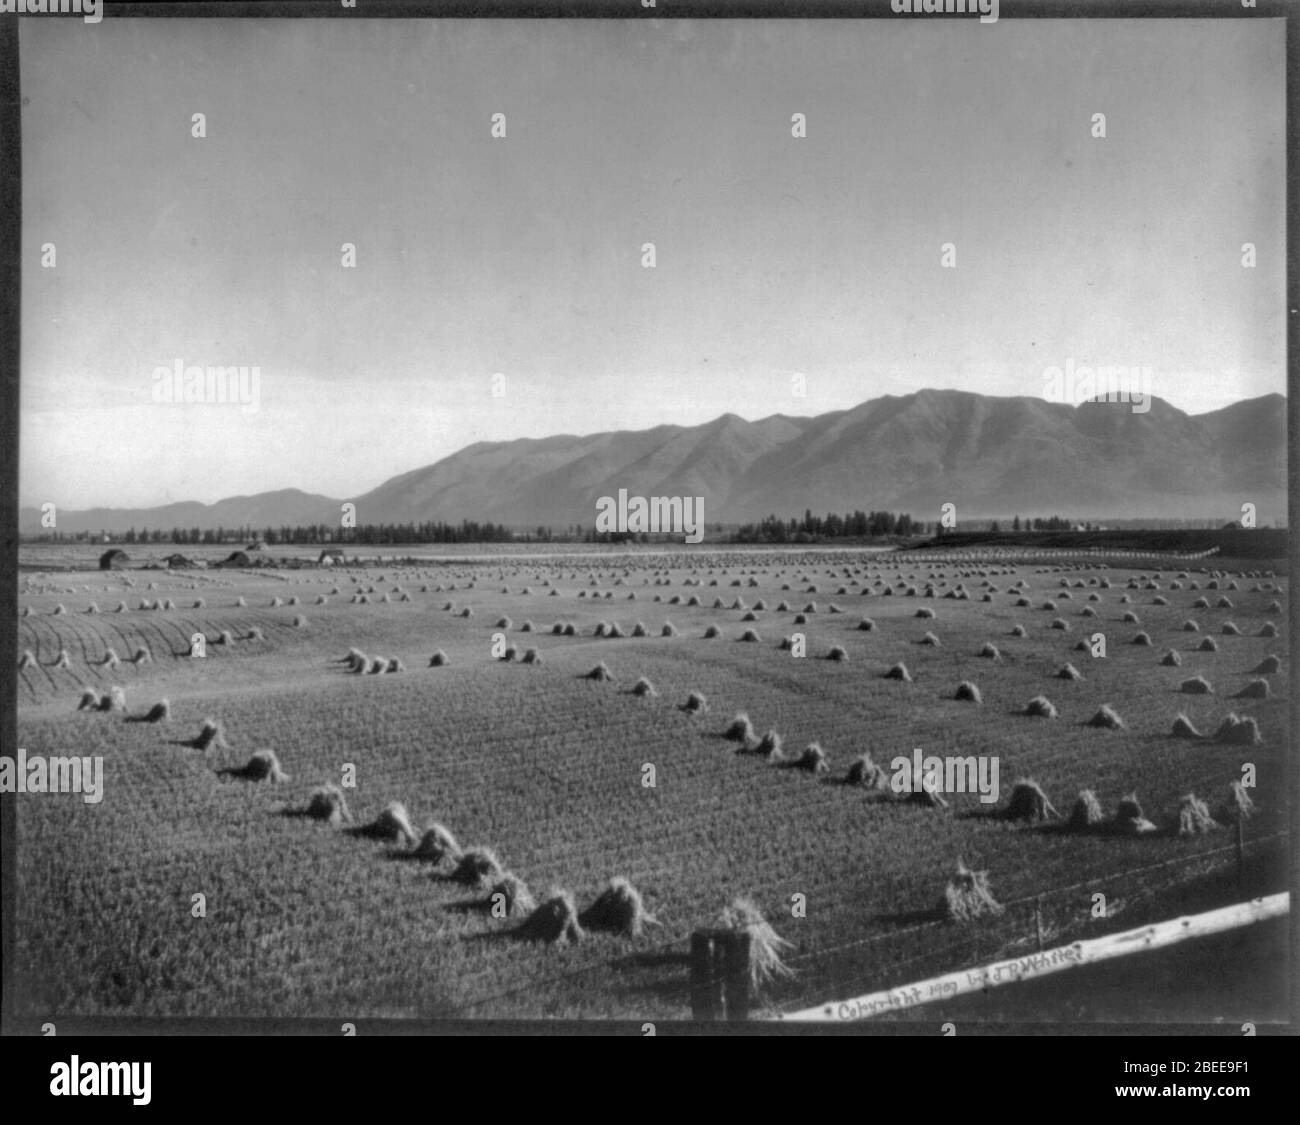 Moment de la récolte, vallée Flathead au Montana Banque D'Images